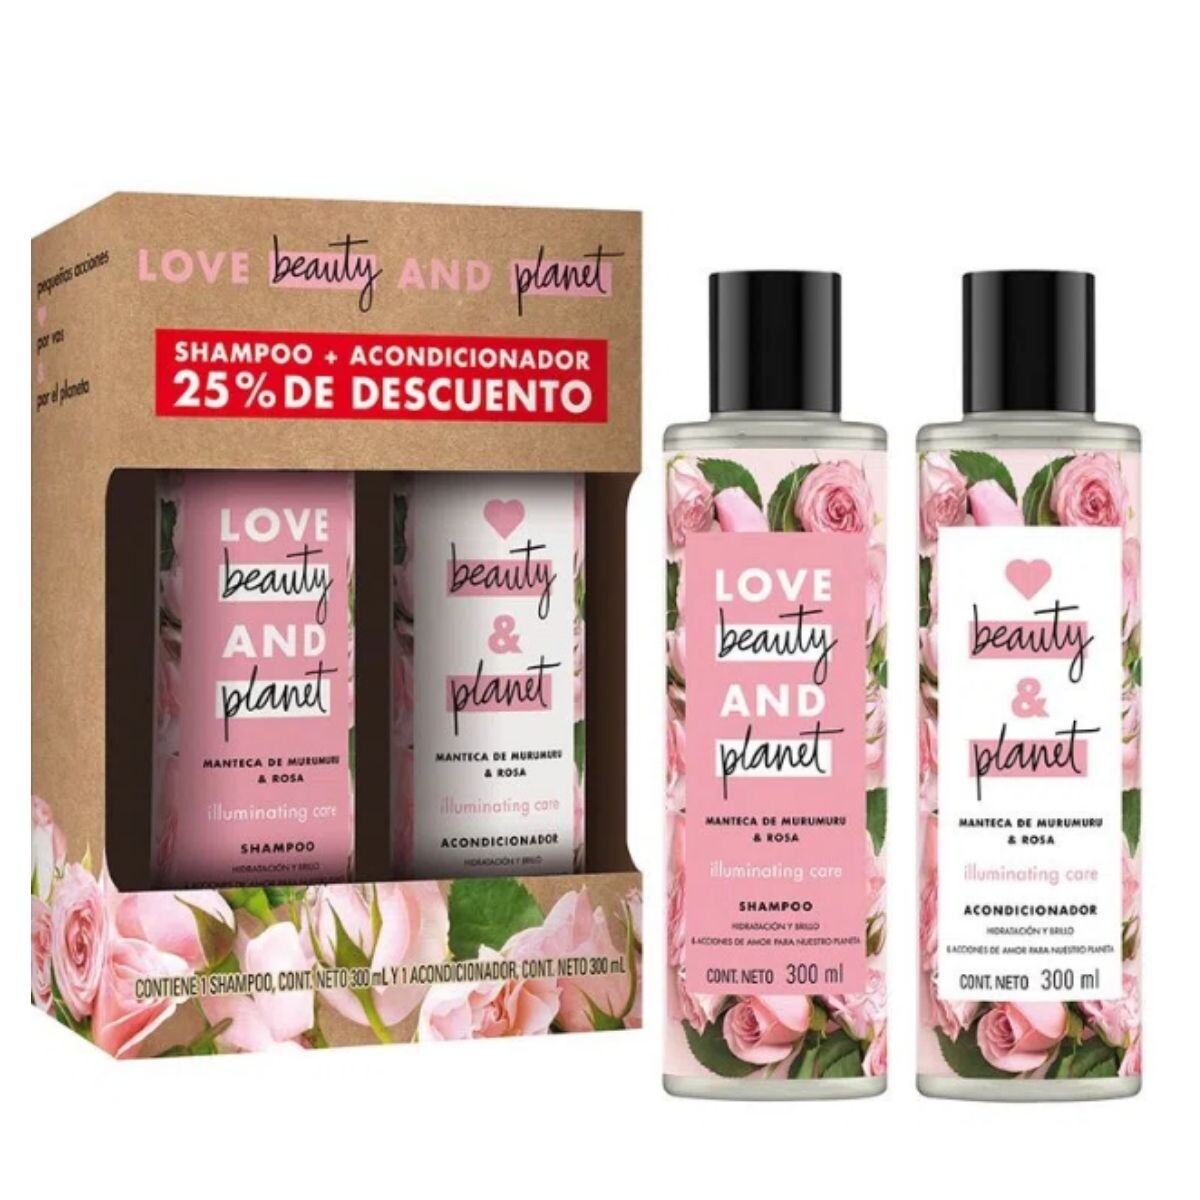 Shampoo Love Beauty & Planet Illuminating Care 300 ML + Acondicionador 300 ML 25% OFF 